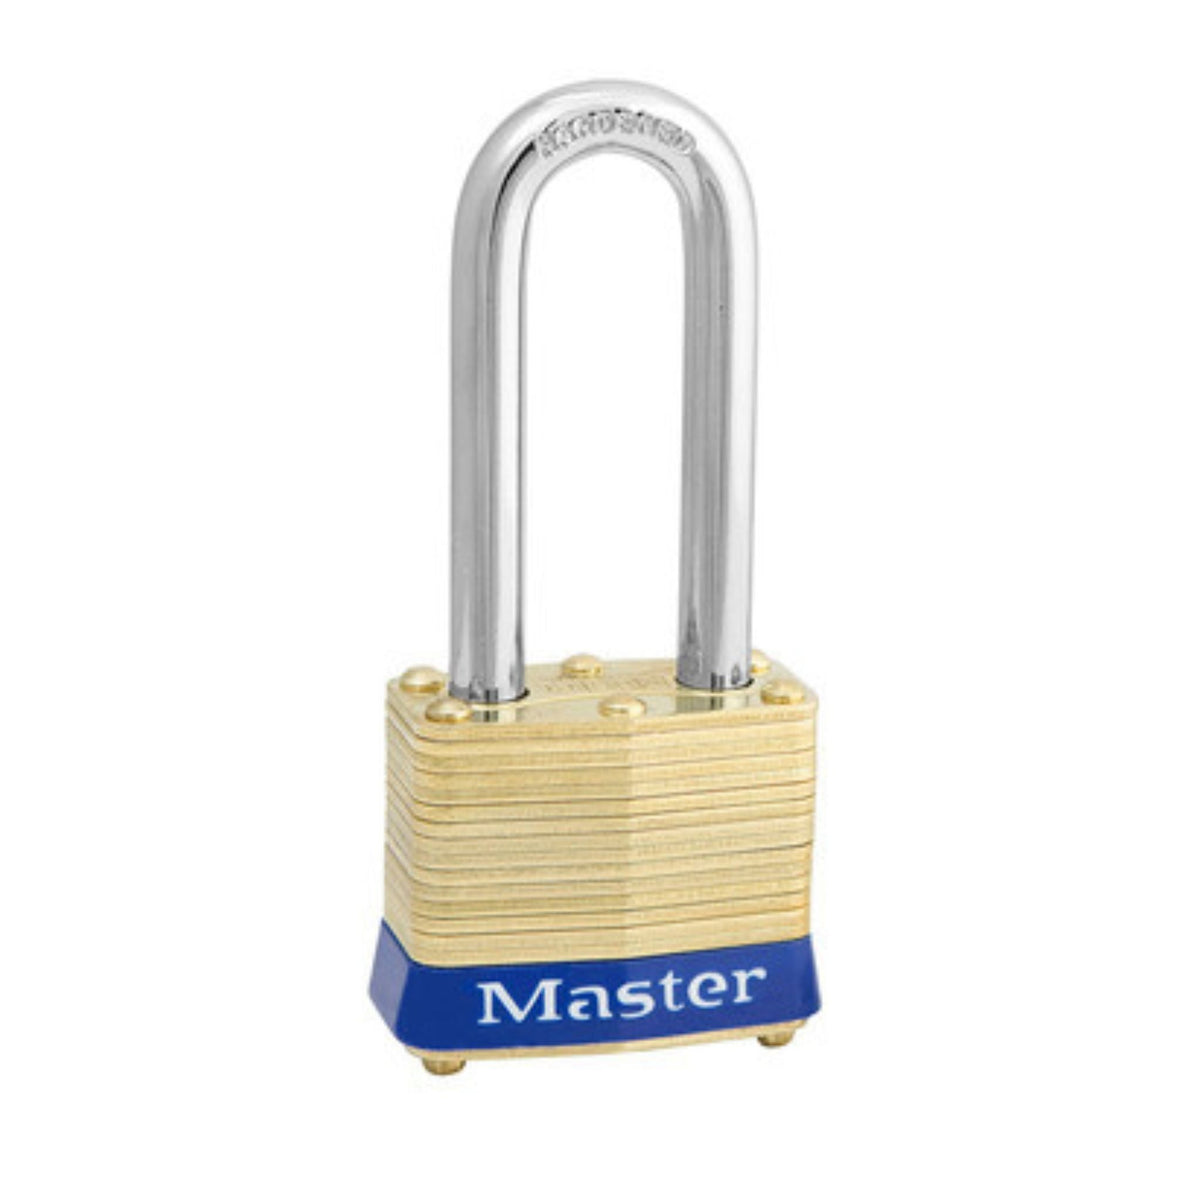 Master Lock 4KALH 3907 Lock Laminated brass No. 4 Series Padlock Keyed to Match Existing Key Number KA3907 - The Lock Source